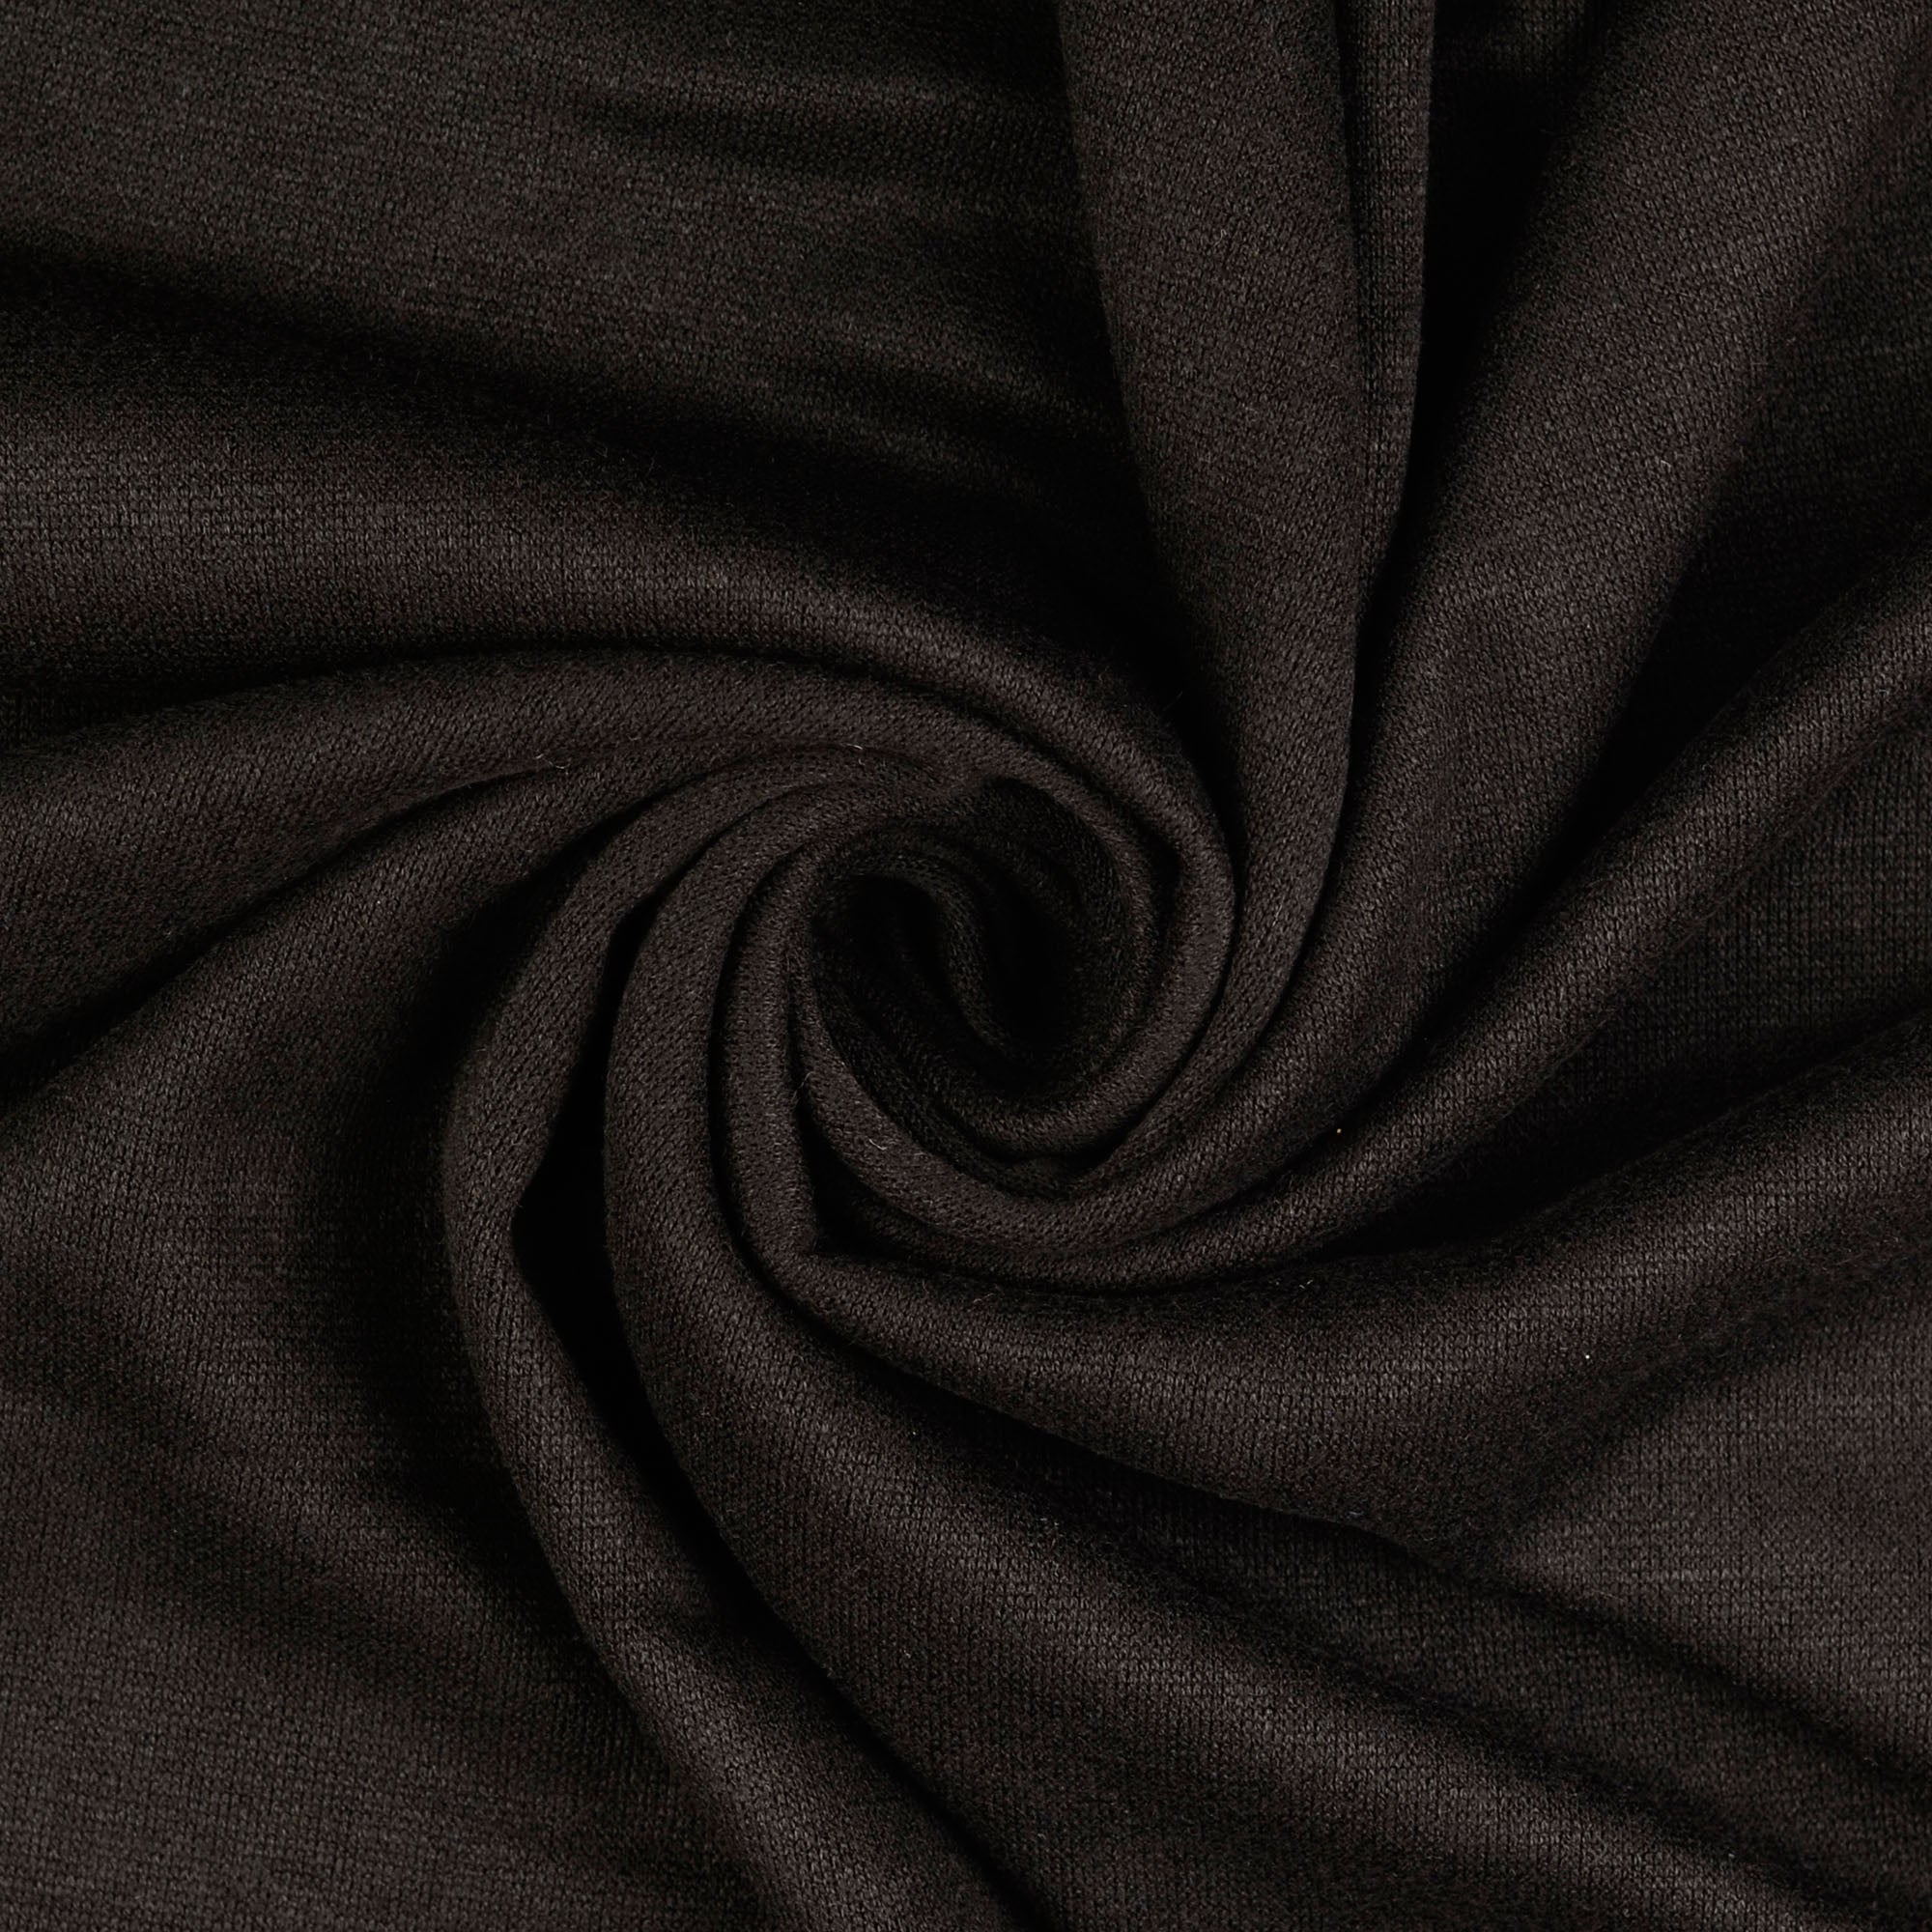 REMNANT 1.8 Metres - Snug Viscose Blend Sweater Knit in Black